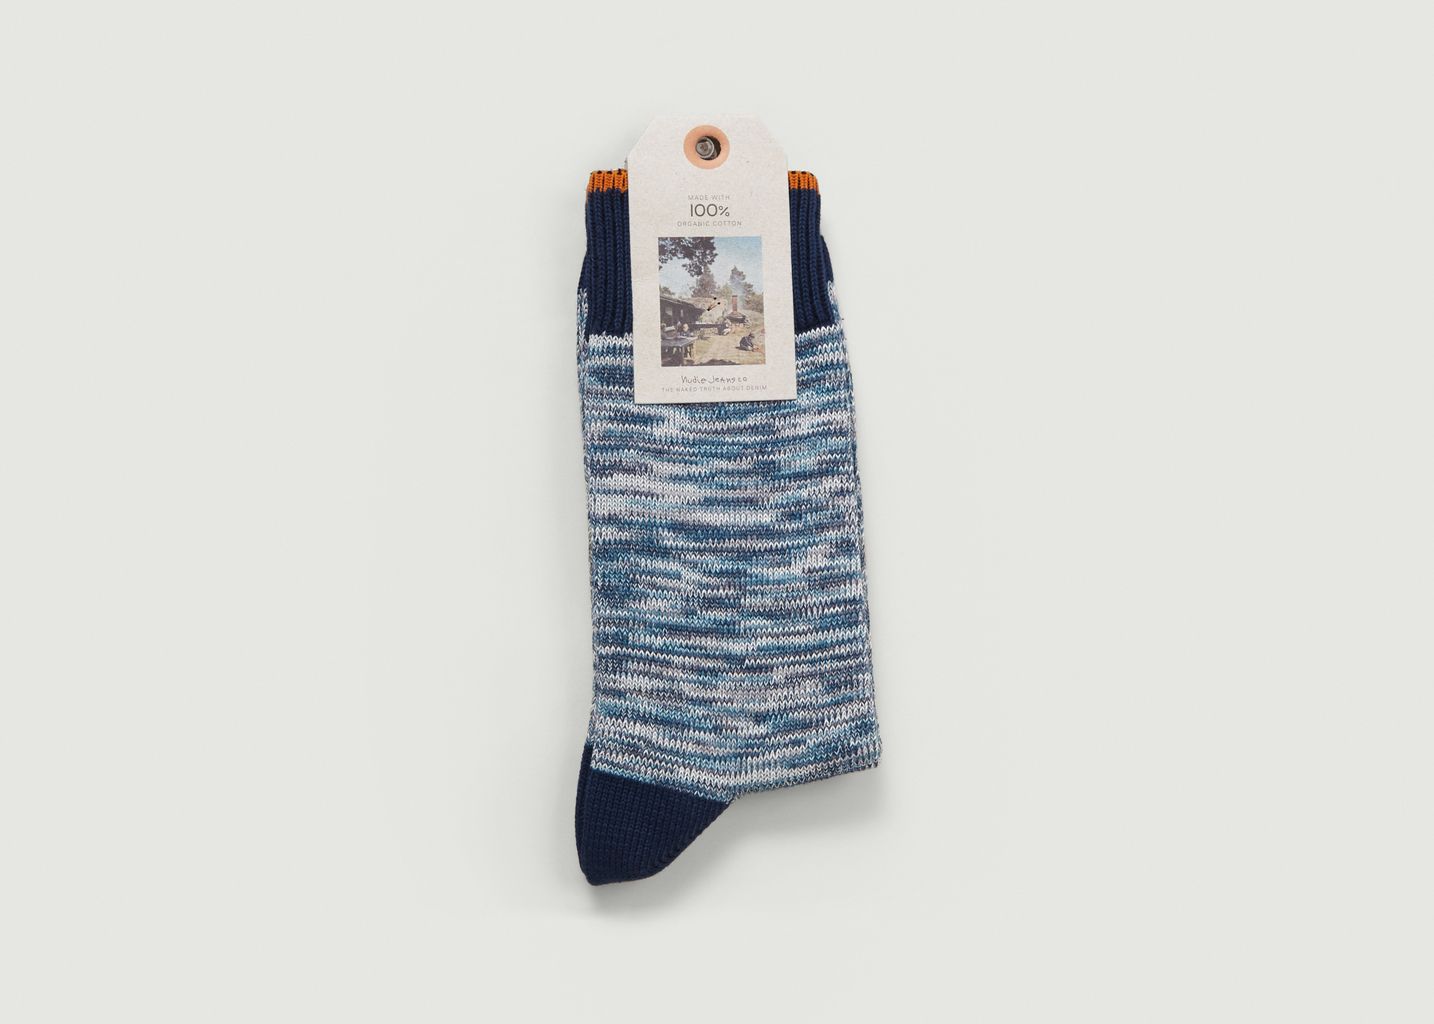 Rasmunsson Mottled Socks - Nudie Jeans